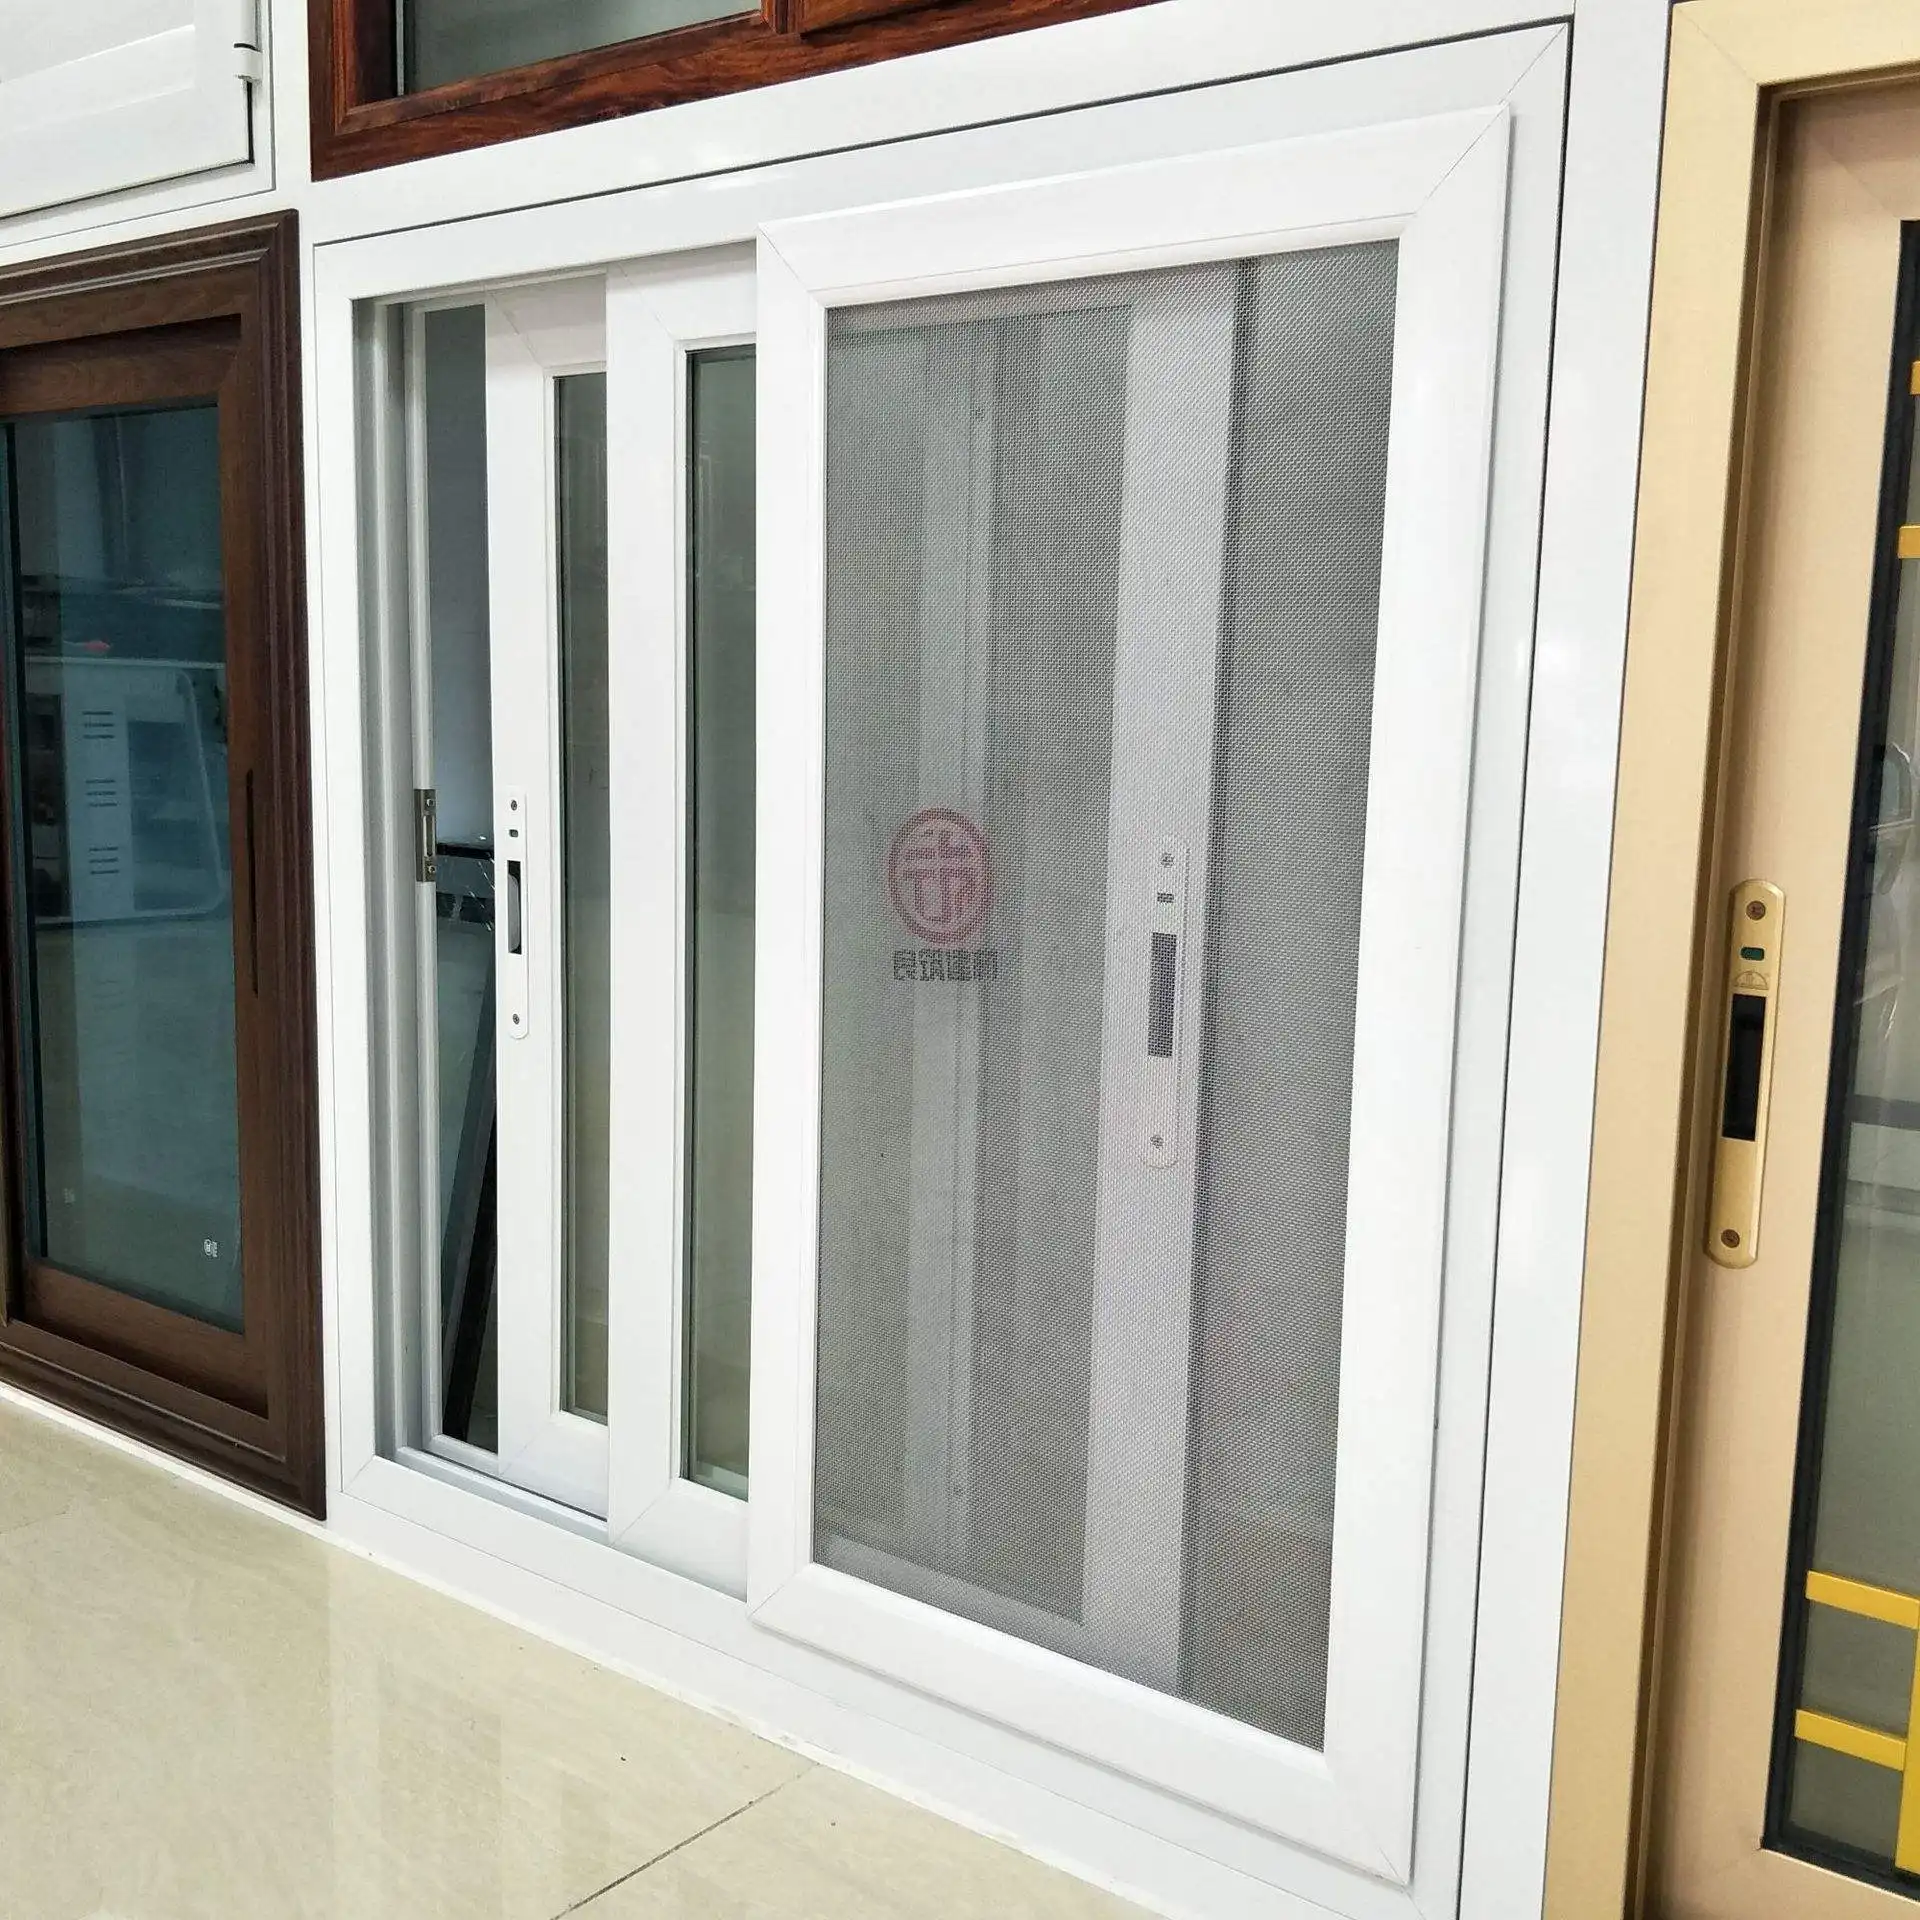 저렴한 가격 알루미늄 프로필 유리 창 최신 디자인 알루미늄 합금 프레임 수평 슬라이딩 창